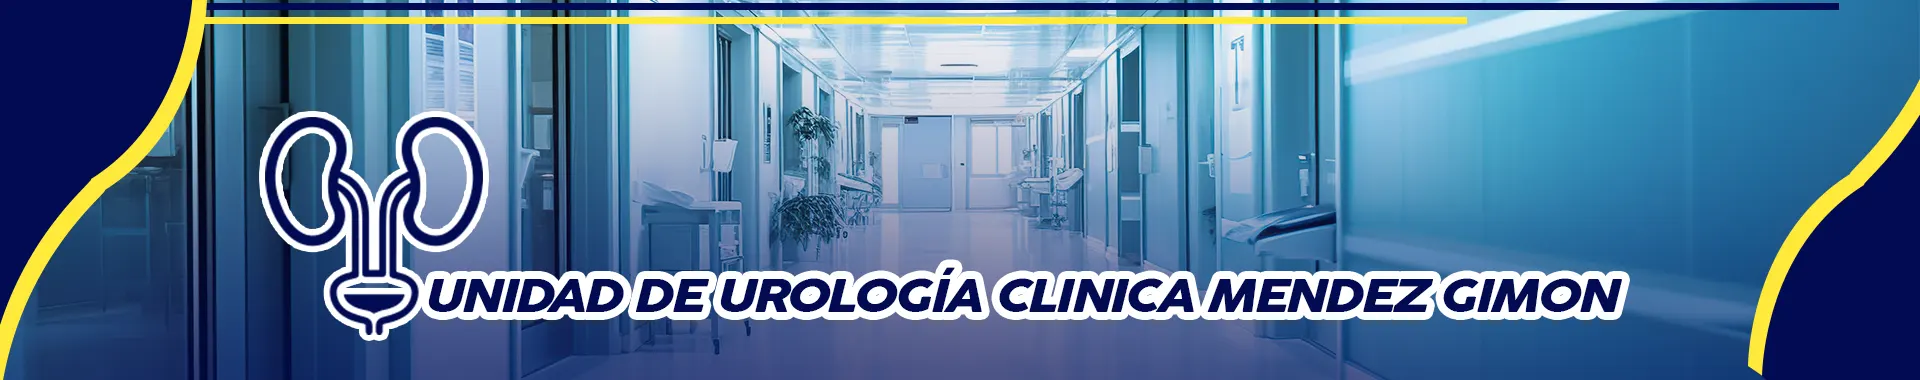 Imagen 1 del perfil de Unidad de Urología Clínica Méndez Gimon